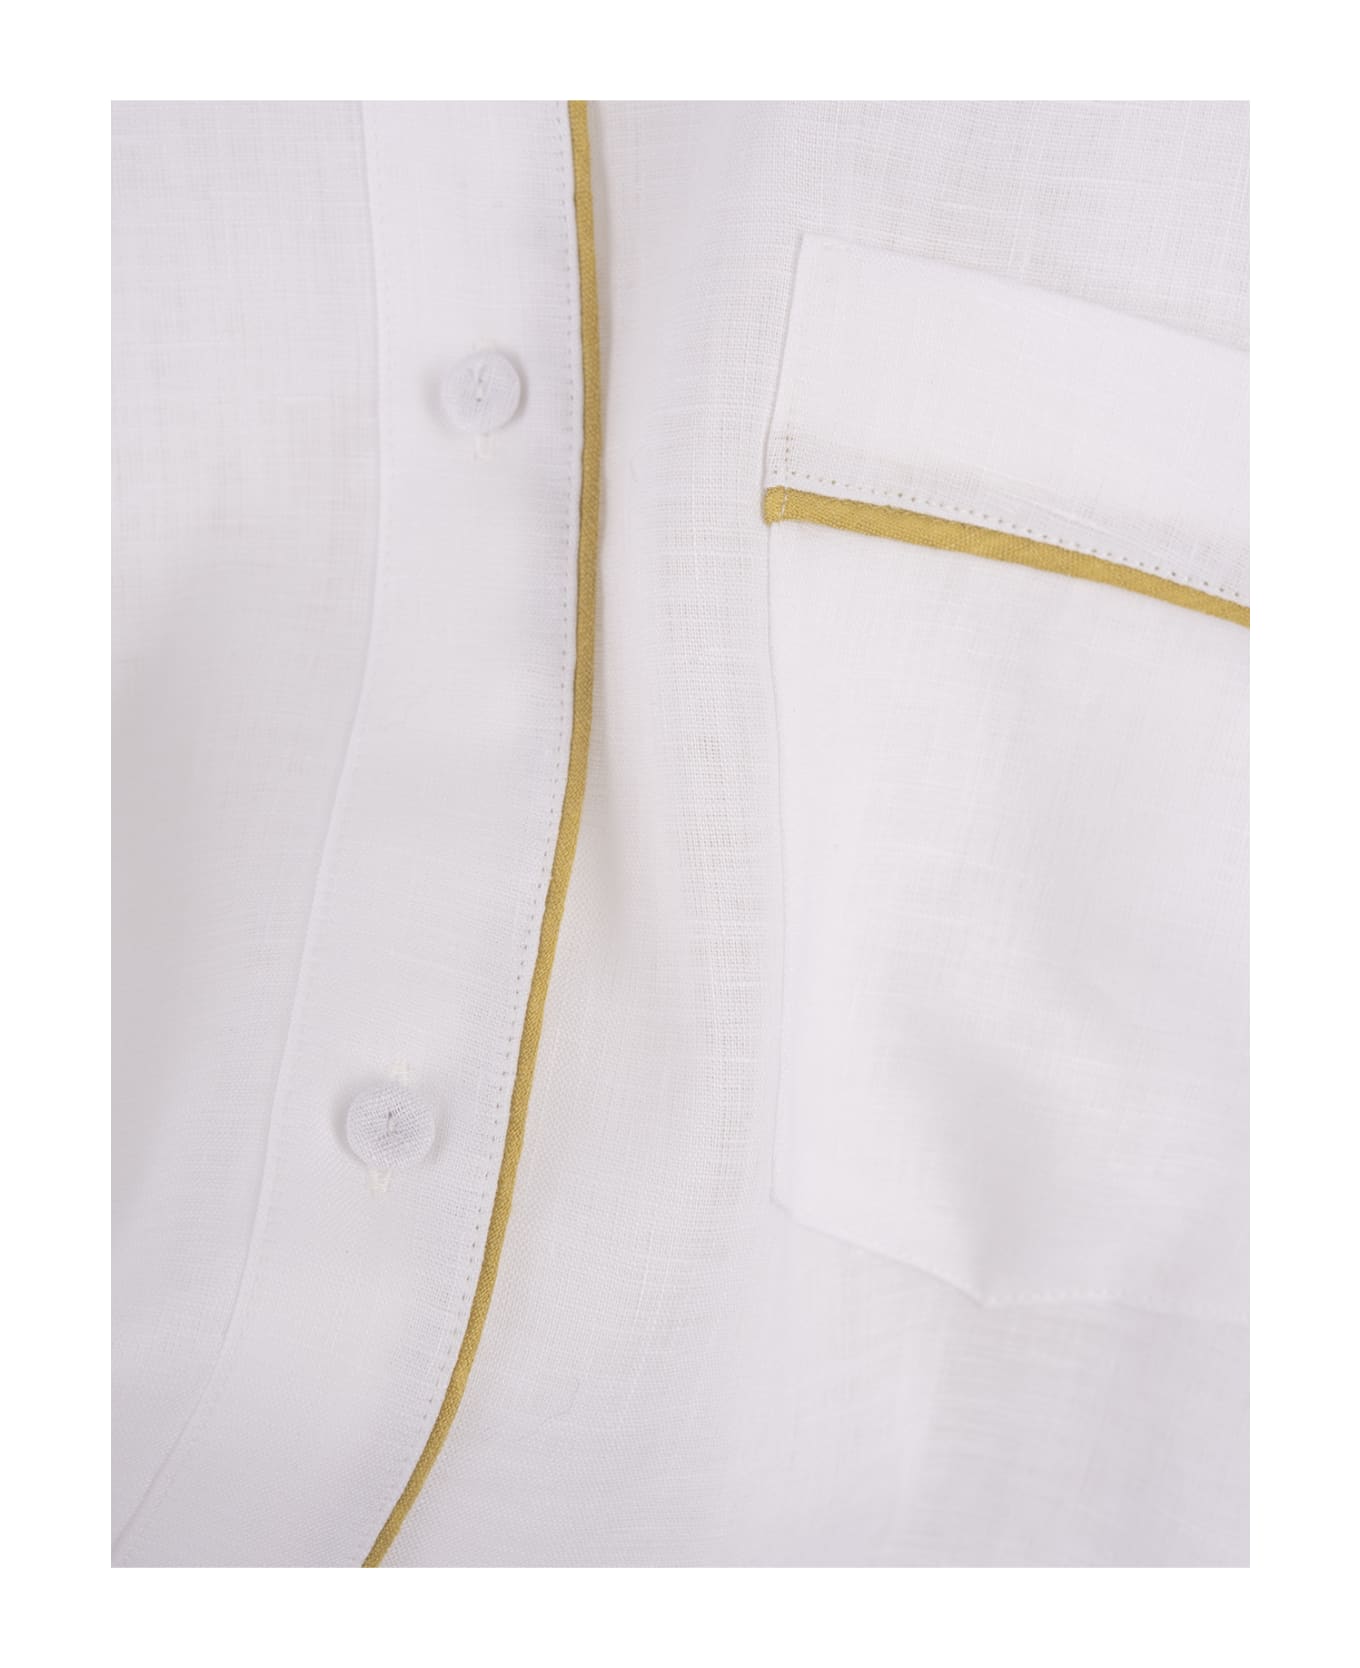 Fabiana Filippi White Linen Canvas Shirt - White